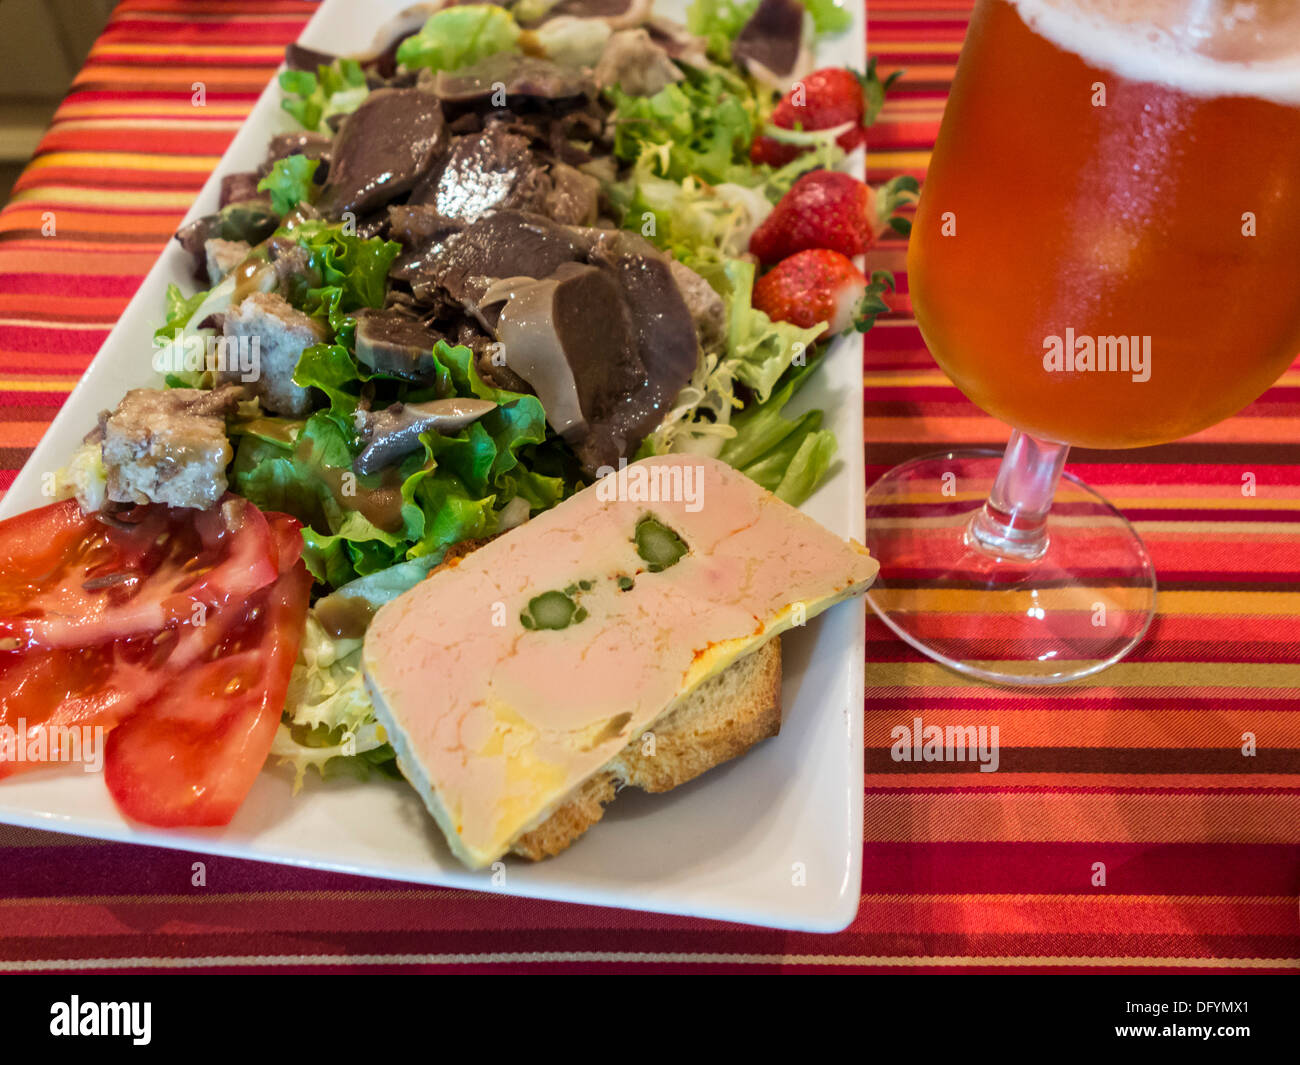 France, Aude - Castelnaudary. Hotel de France. Salad with paté de foie gras and sliced duck gizzard (neck). Stock Photo